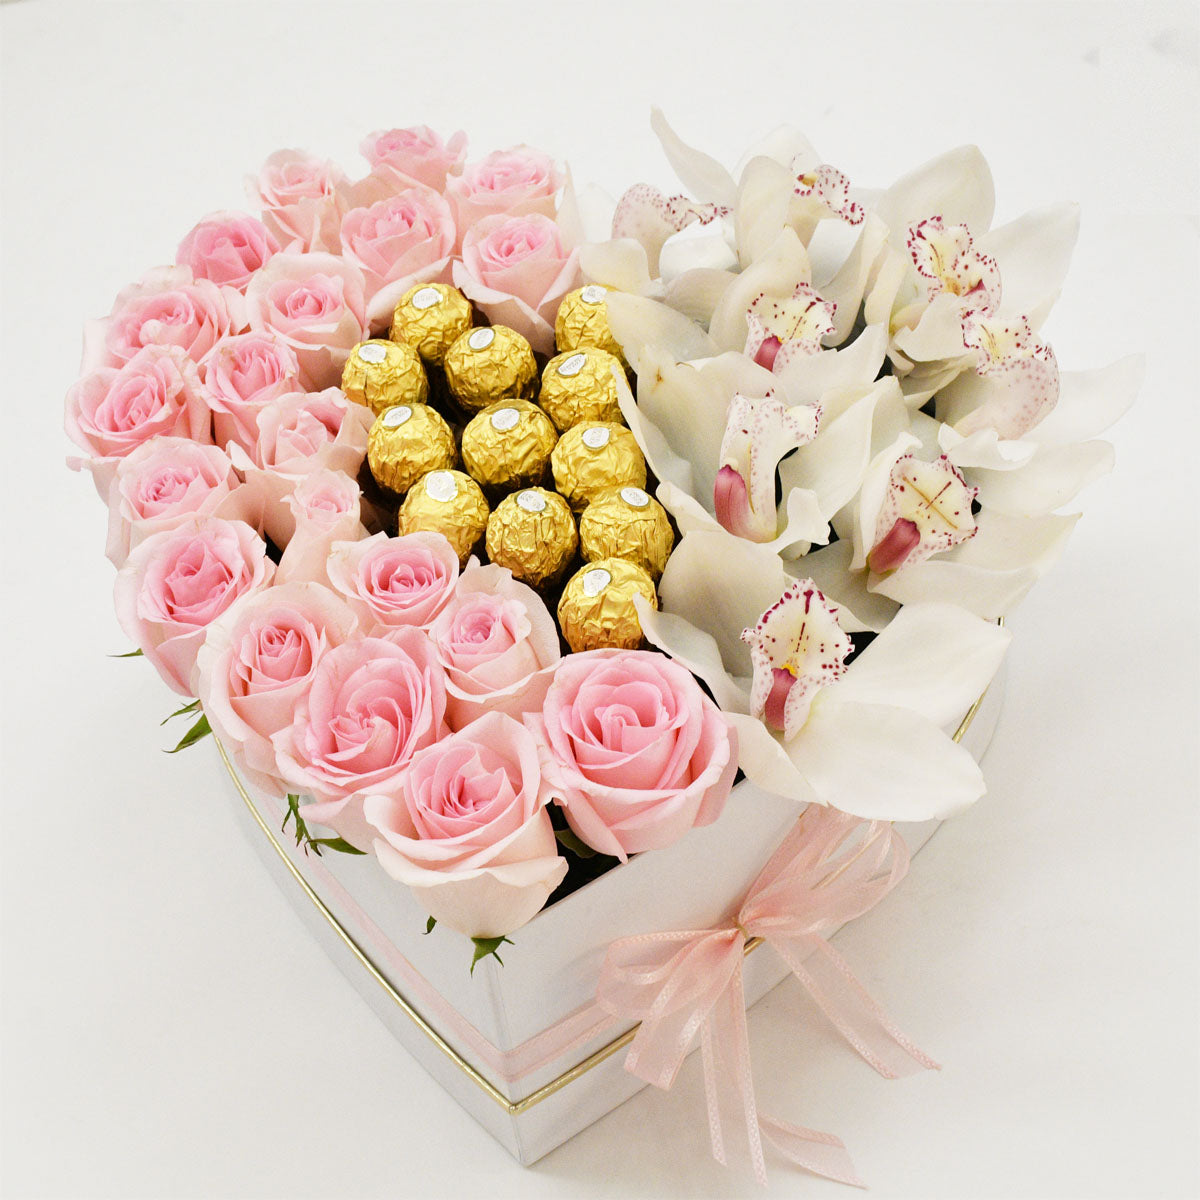 Pink Heart Love Choco & Flower Arrangements